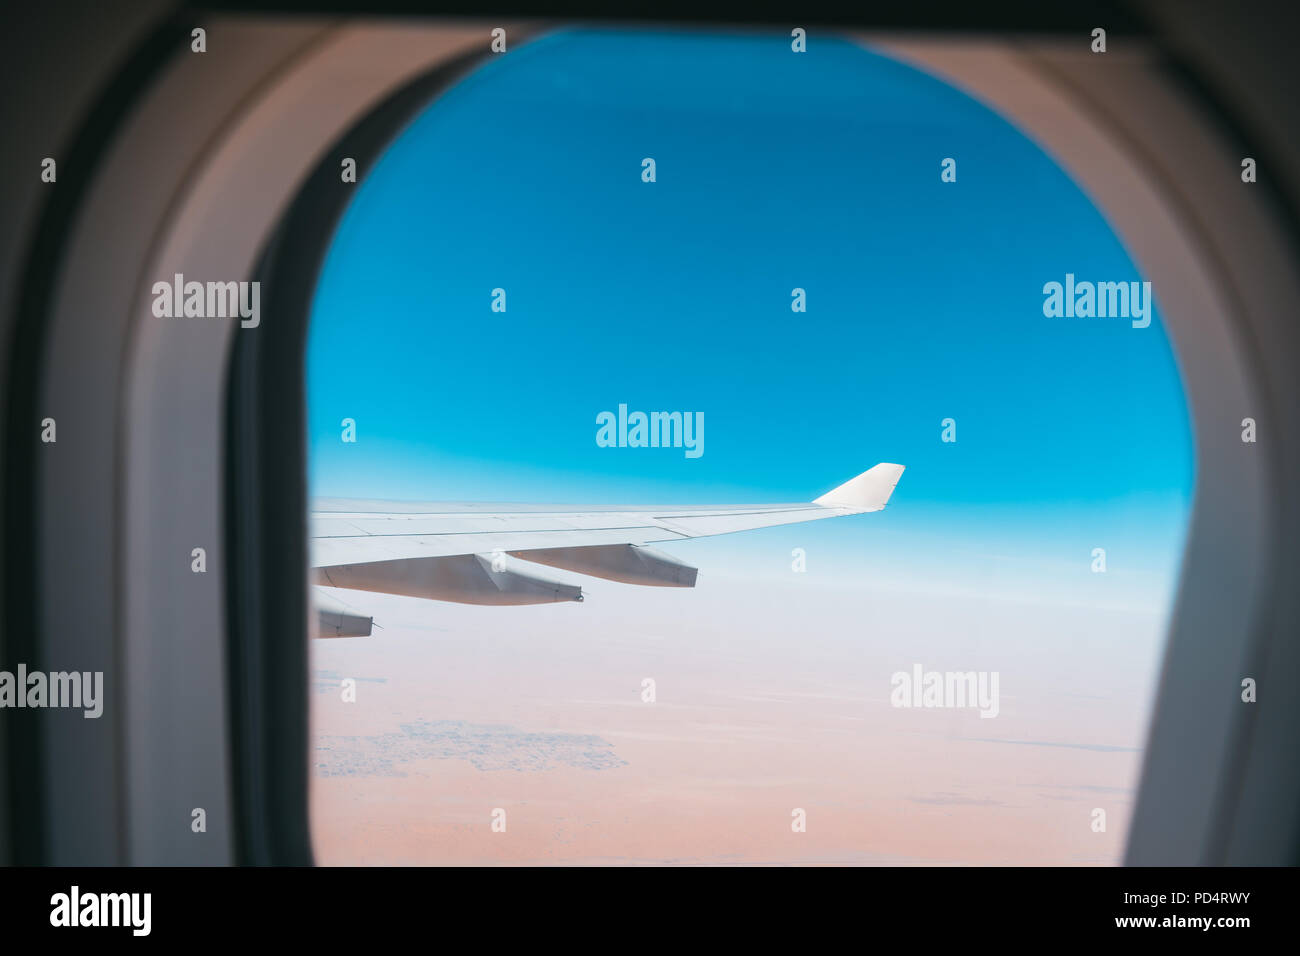 Belle vue de la fenêtre de l'avion dans le ciel bleu et le désert avec des ailes d'avion Banque D'Images